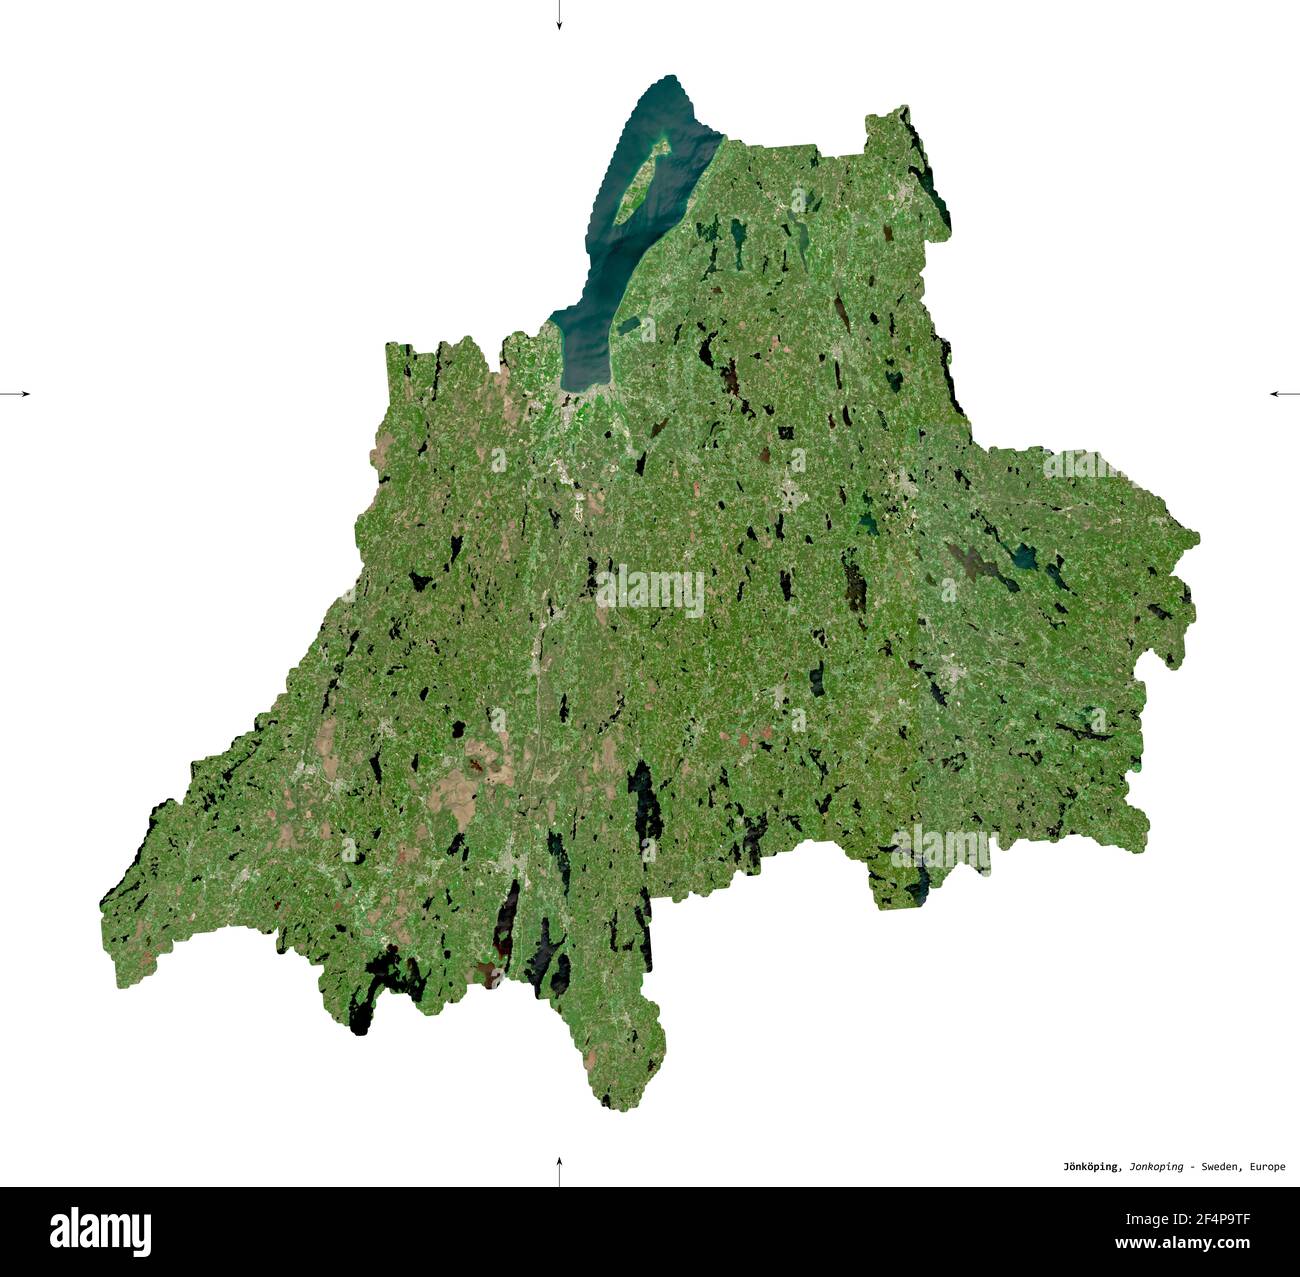 Jonkoping, comté de Suède. Imagerie satellite Sentinel-2. Forme isolée sur blanc. Description, emplacement de la capitale. Contient Copernic modifié Banque D'Images